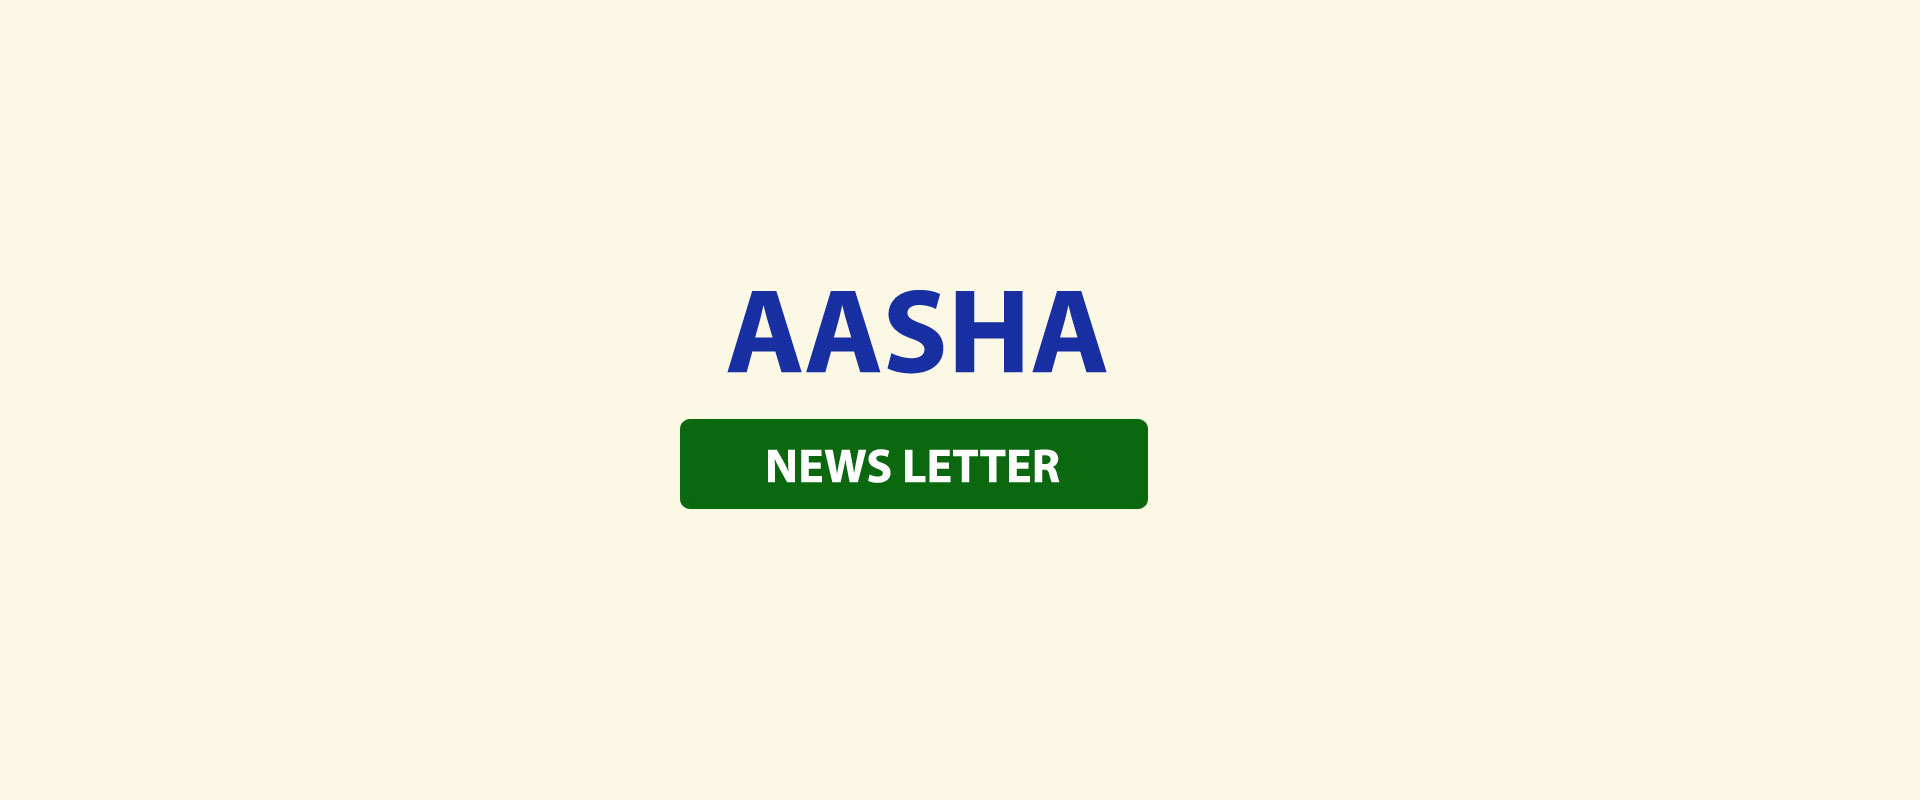 Aasha News letter